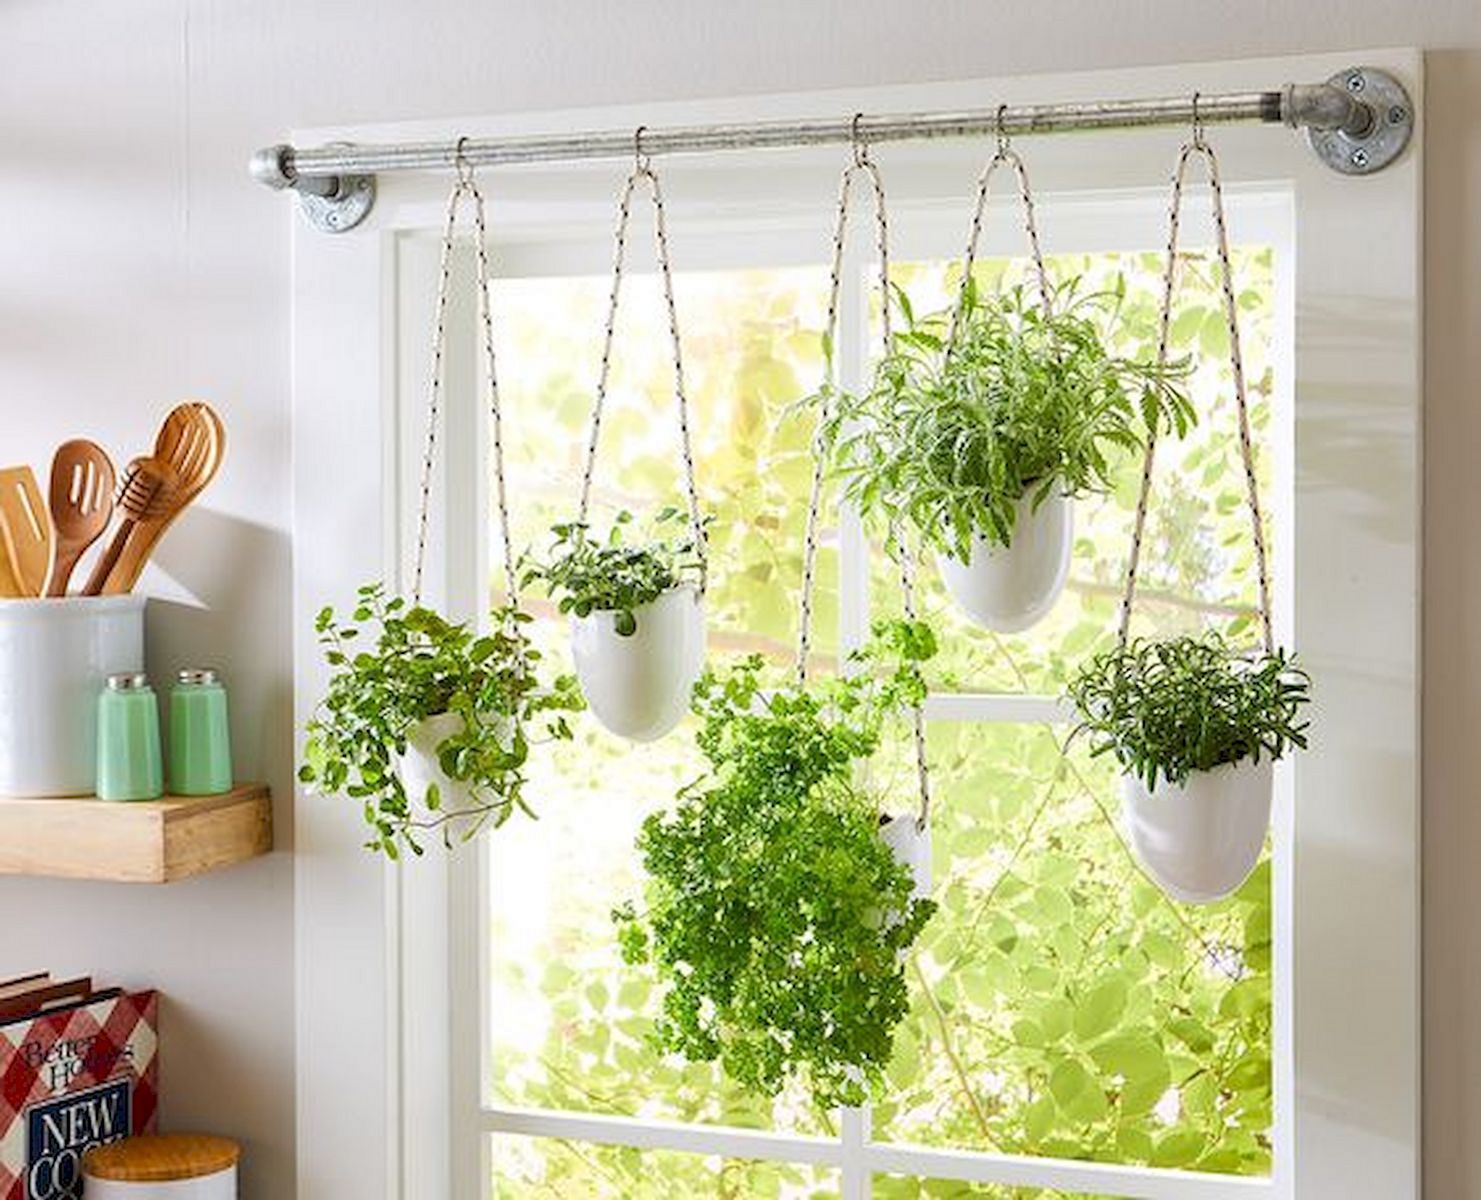 Herb Garden Window Home Design Ideas